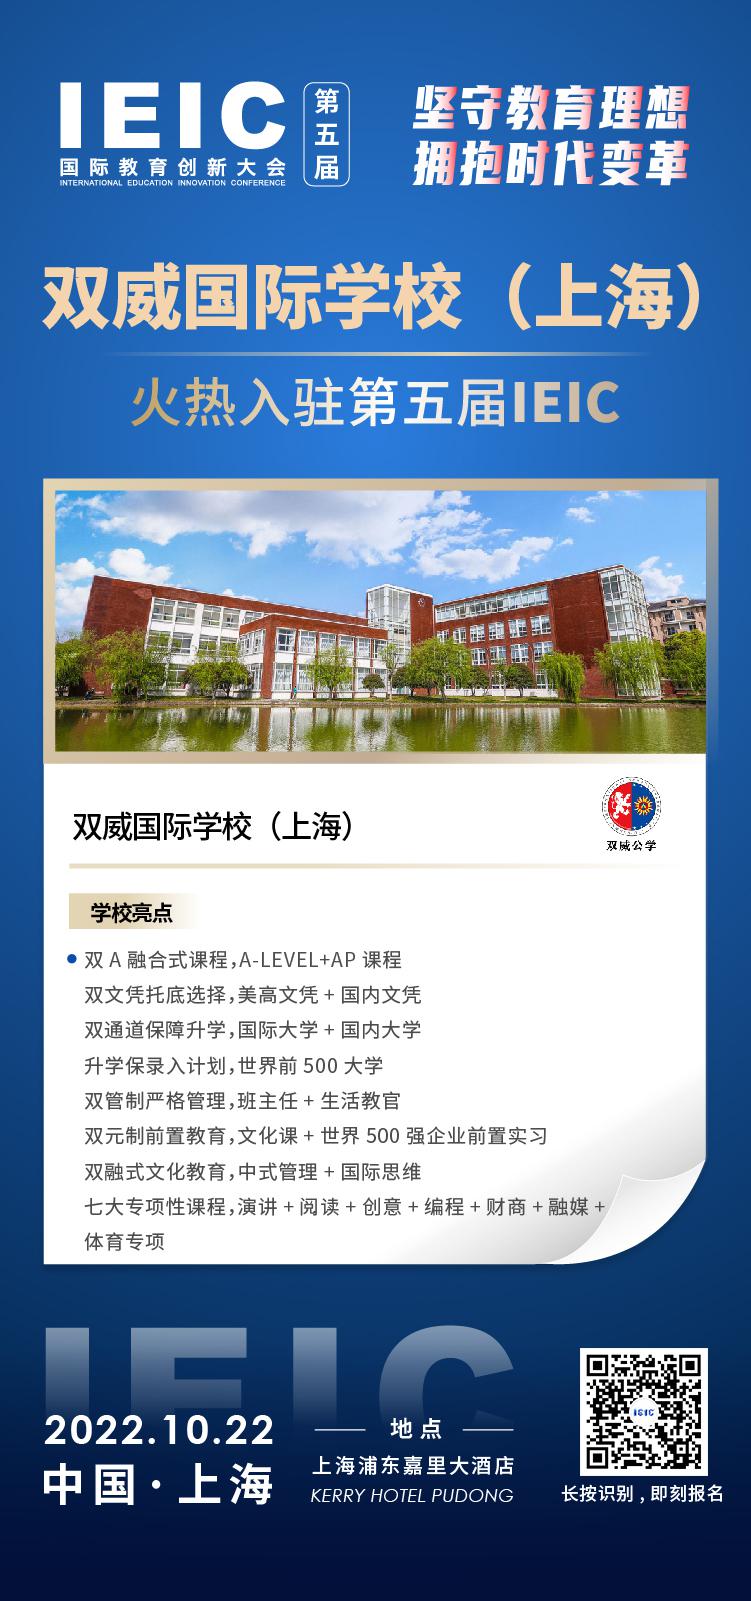 双威国际学校(上海)成功入驻参加2022年远播第五届IEIC国际教育创新大会